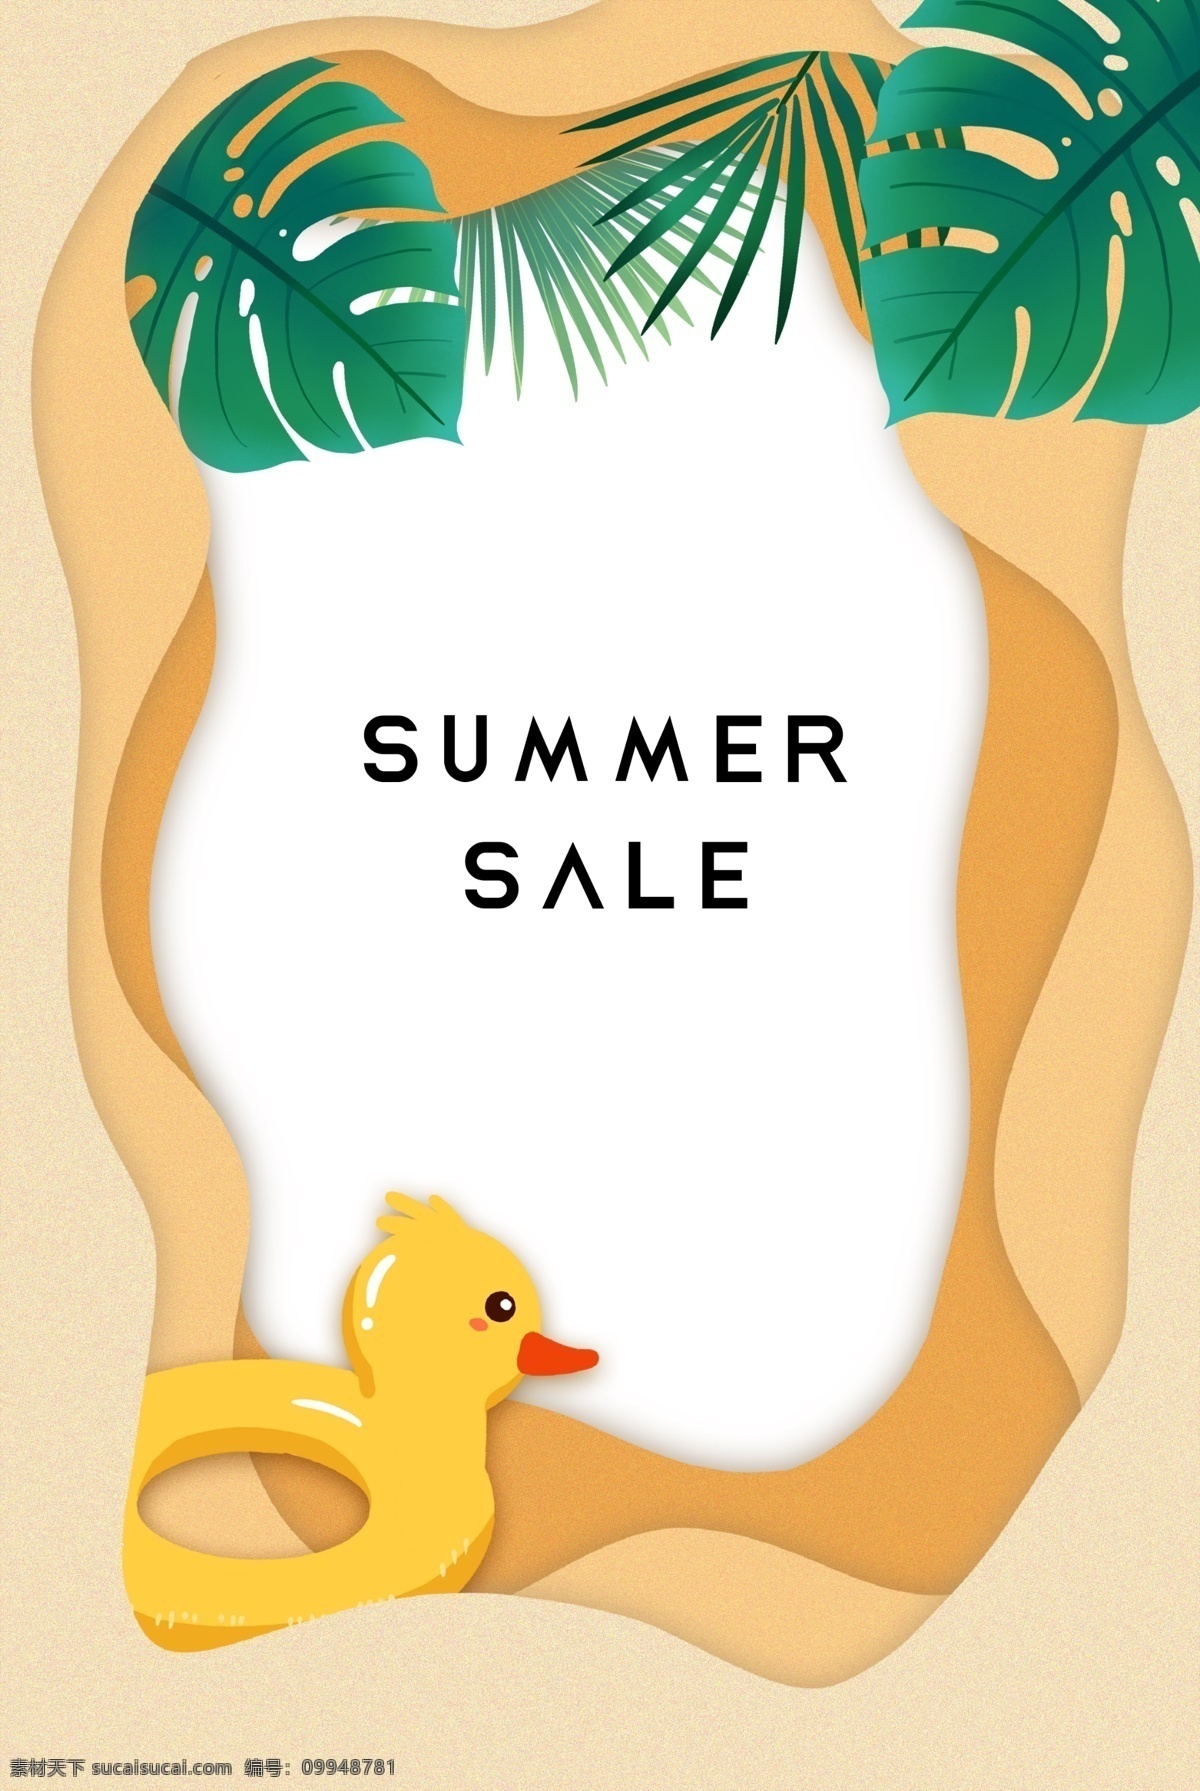 夏季 沙滩 剪纸 边框 夏天 度假 海边 旅行 夏季促销海报 剪纸边框 小黄鸭 游泳圈 树叶